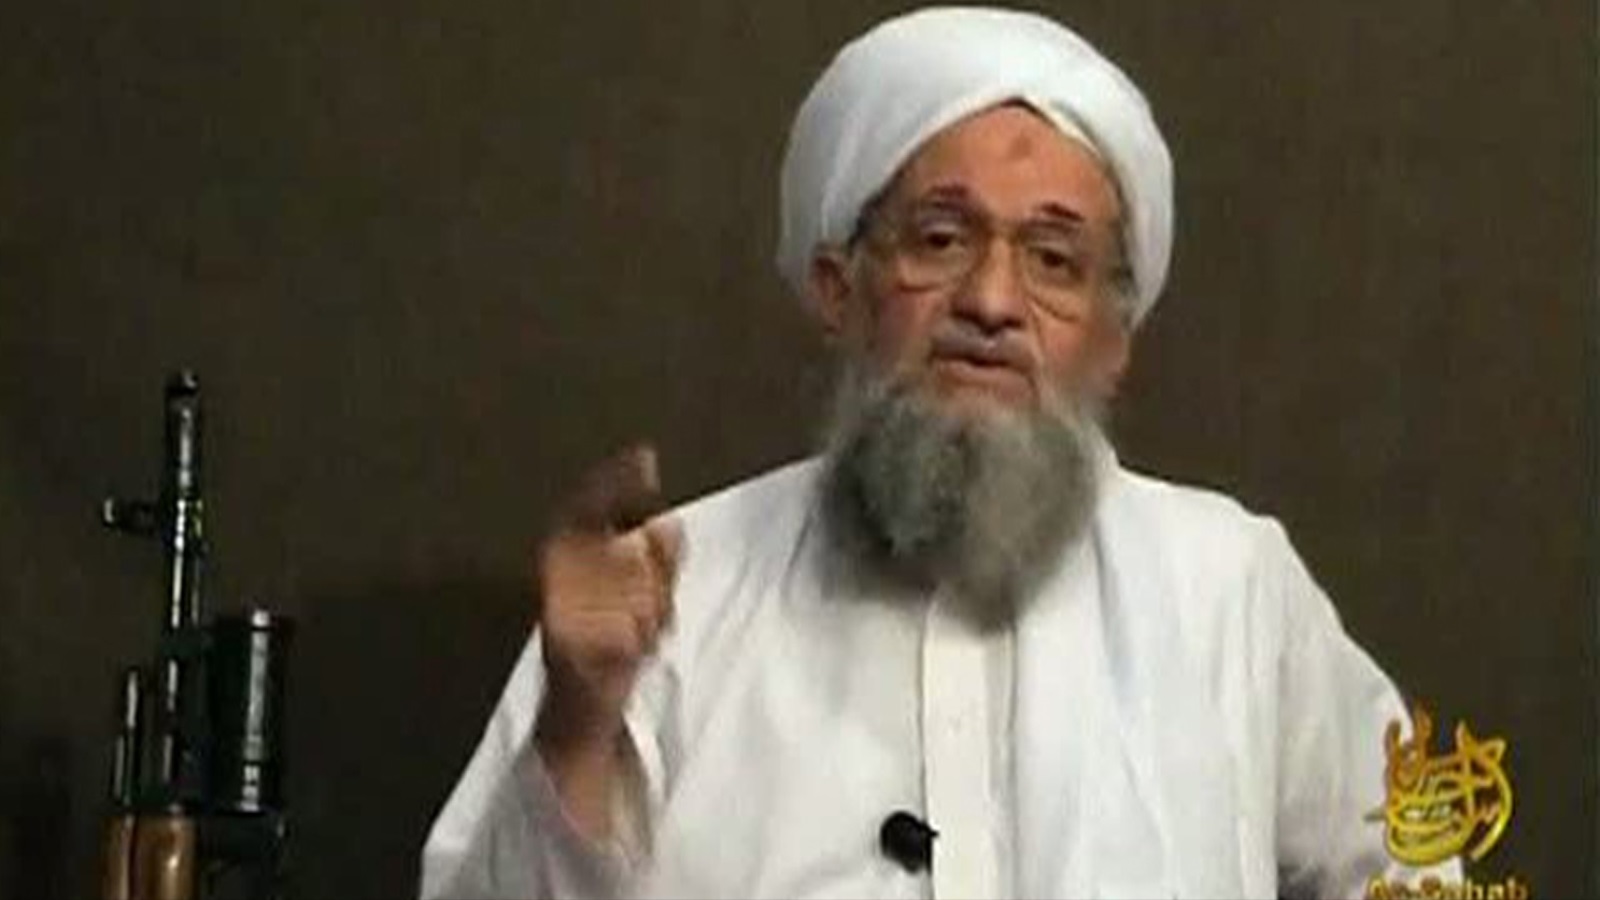  زعيم تنظيم القاعدة العالمي وثاني أبرزقياداتها بعد أسامة بن لادن (رويترز)